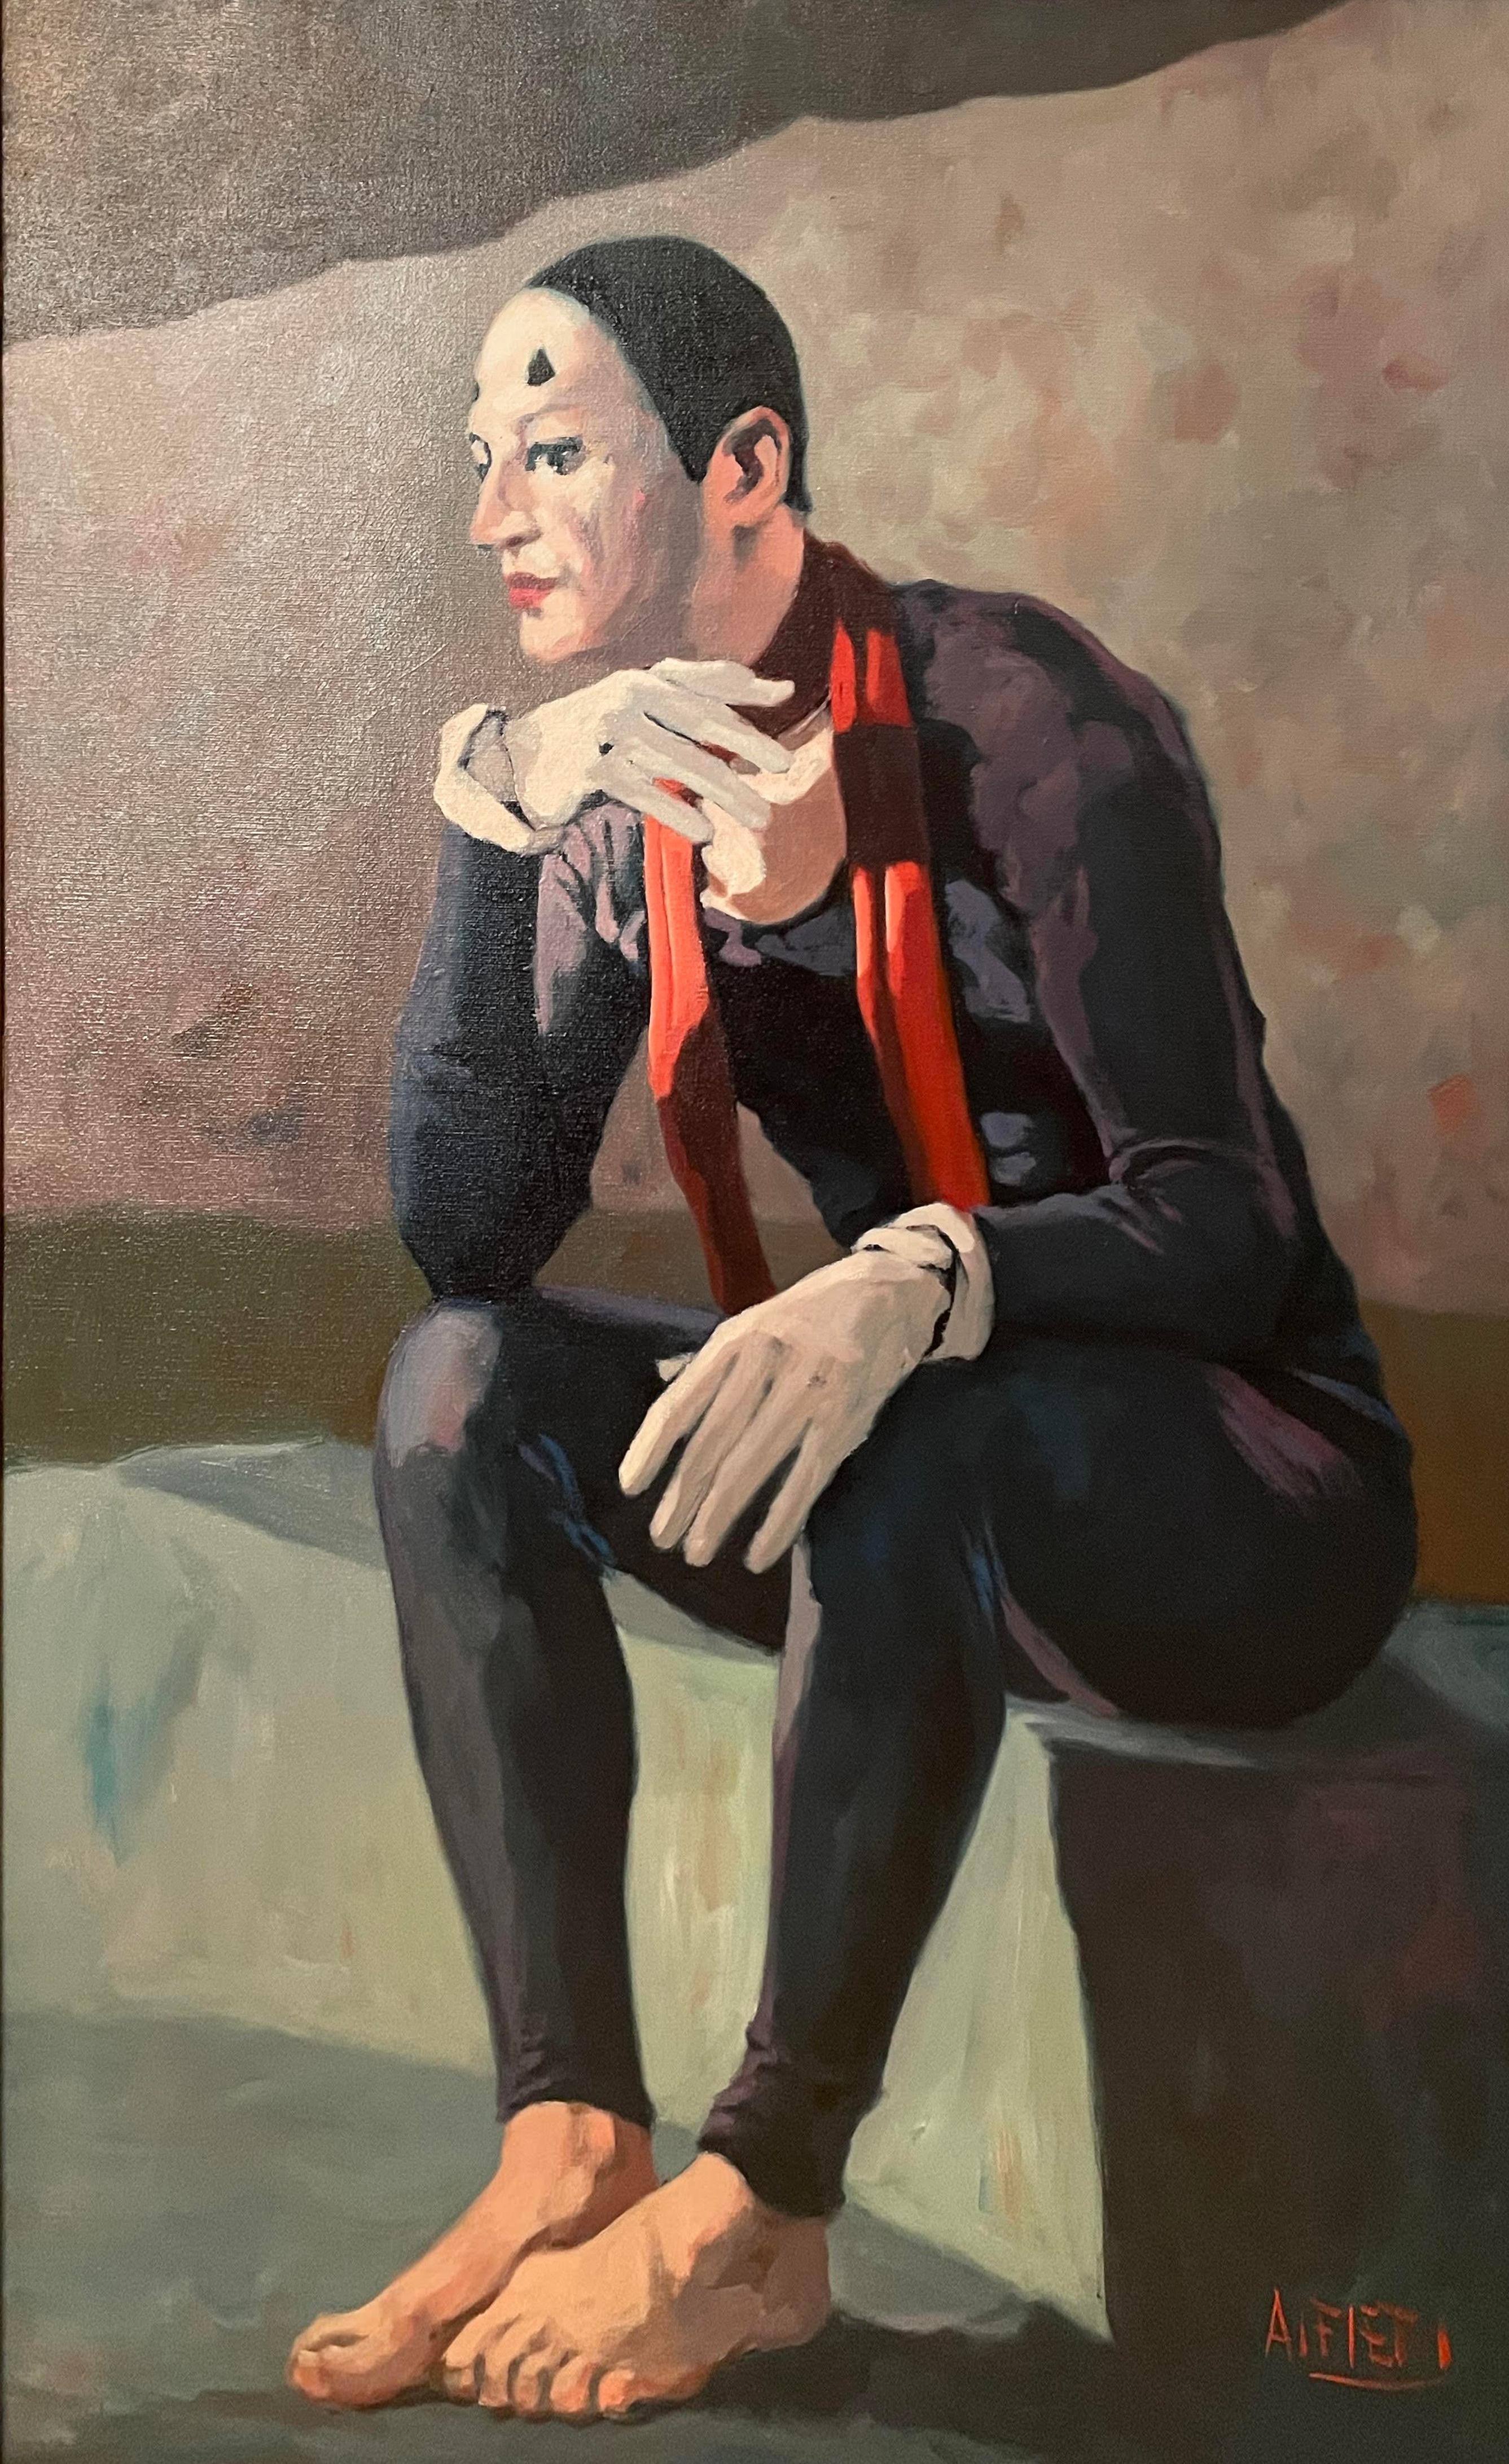 Robe de clown assise - Painting de Philippe Alfieri